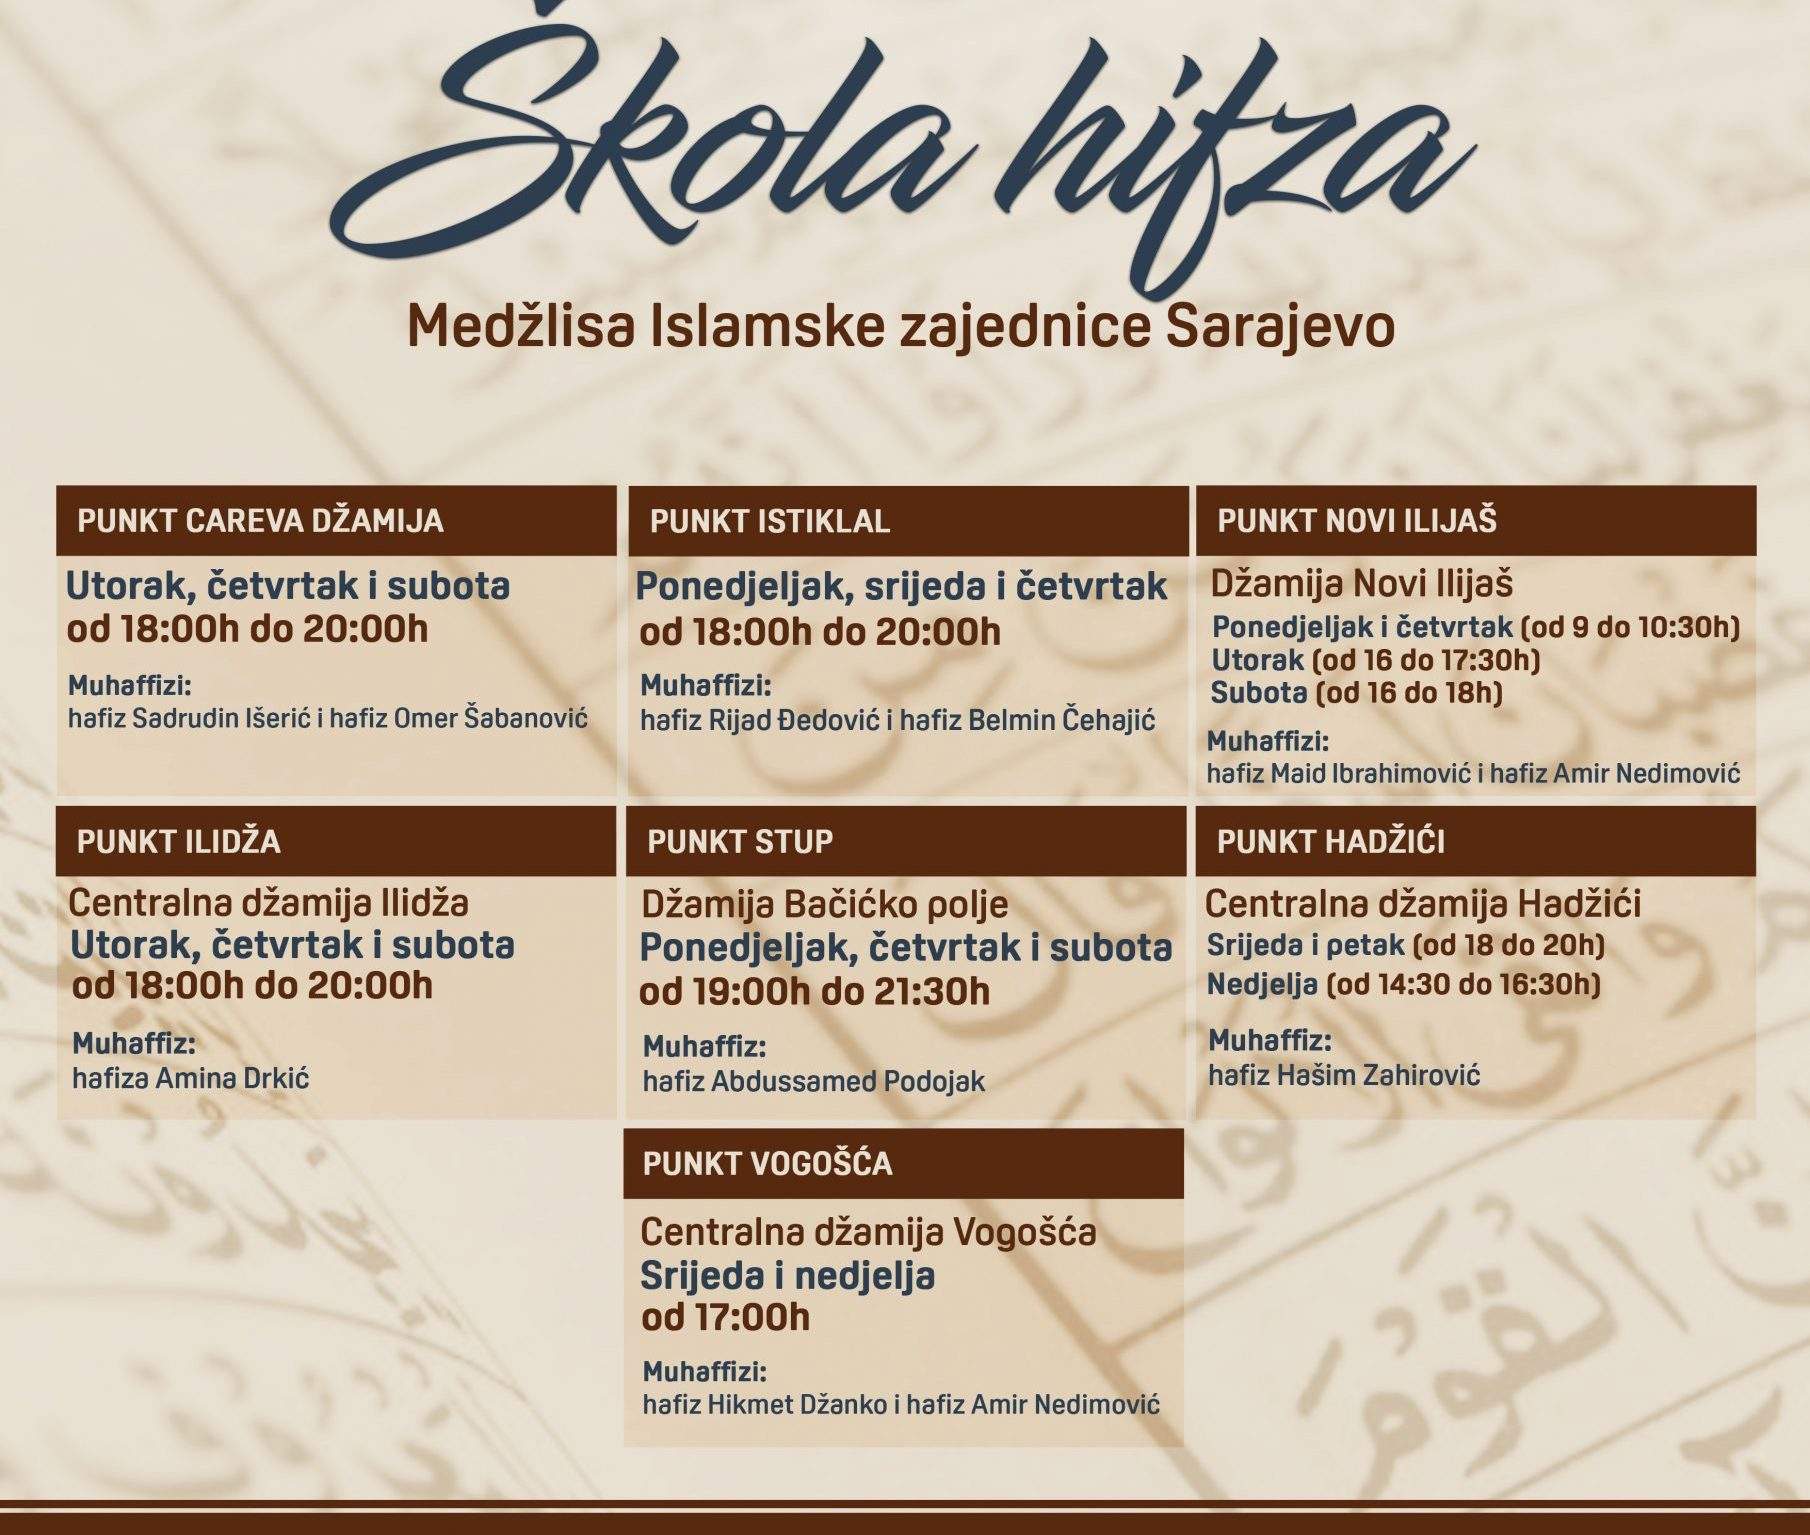 Skola-hifza-scaled.jpg - Škola hifza Medžlisa Islamske zajednice Sarajevo ove godine na sedam punktova